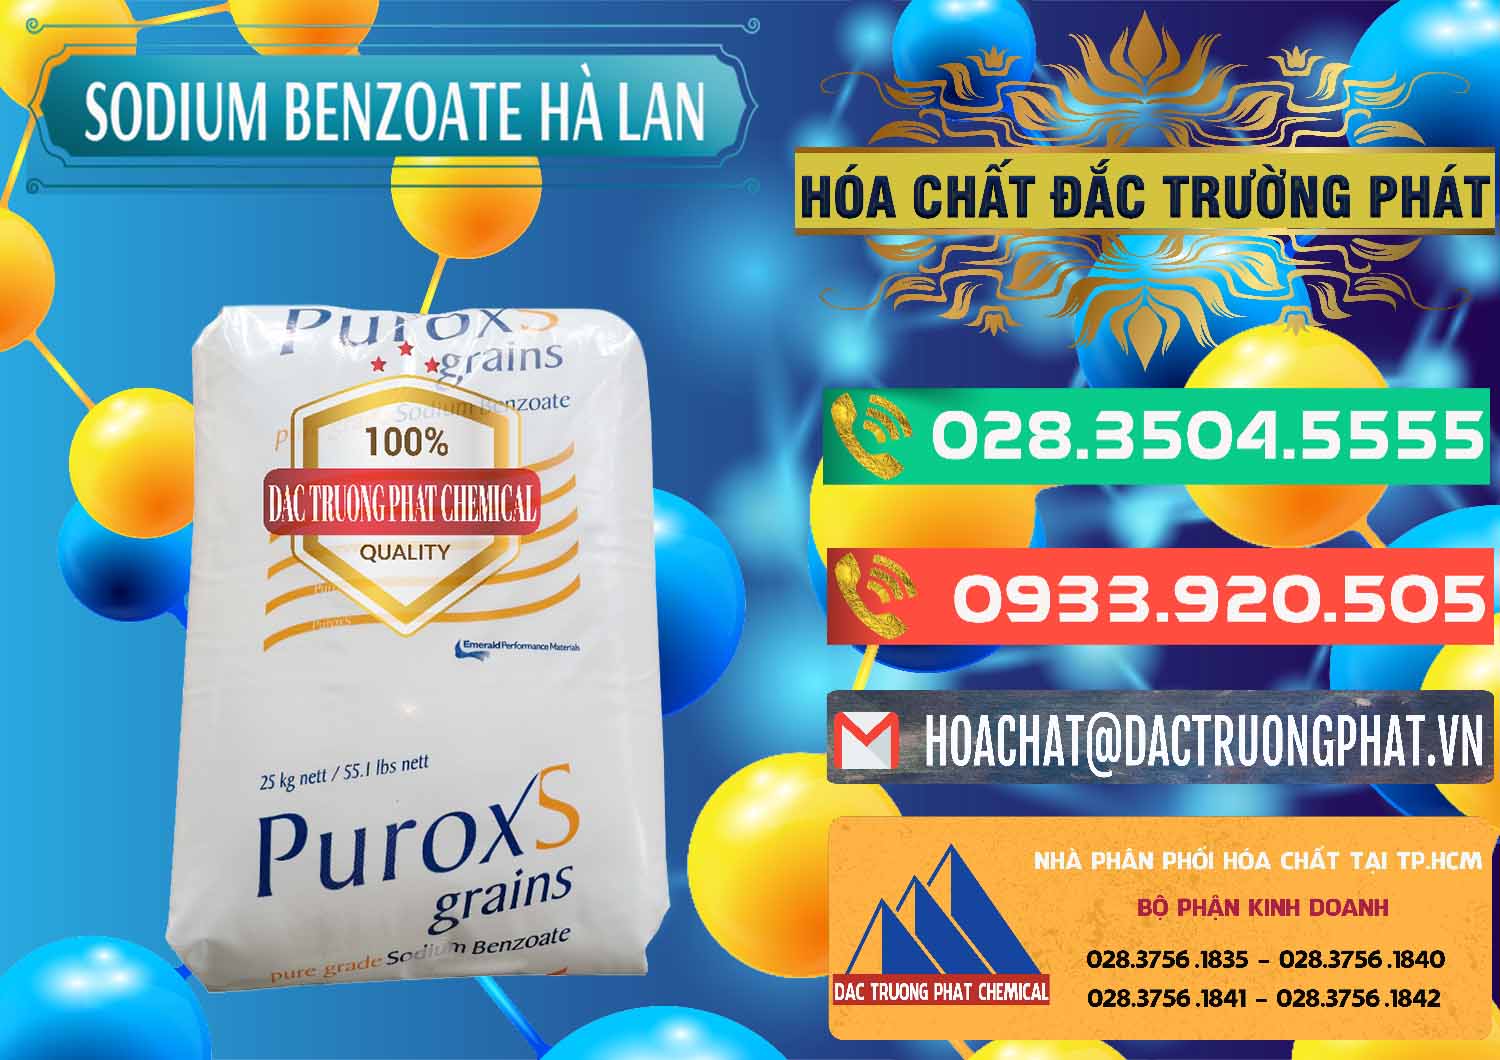 Đơn vị chuyên bán và cung cấp Sodium Benzoate - Mốc Bột Puroxs Hà Lan Netherlands - 0467 - Phân phối & cung ứng hóa chất tại TP.HCM - congtyhoachat.com.vn